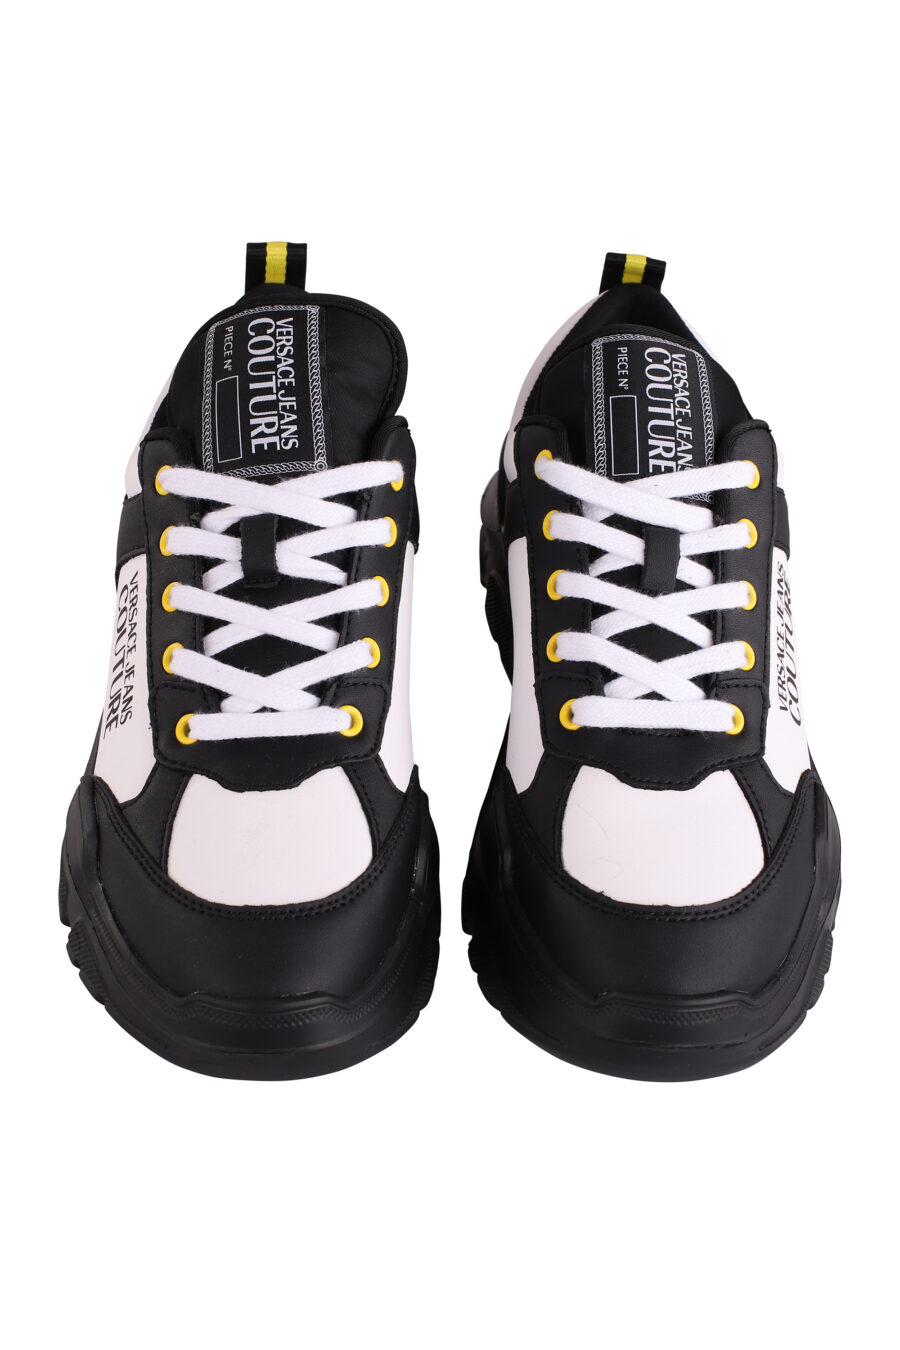 Zapatillas bicolor negras y blancas con logo y detalle amarillo - IMG 9115